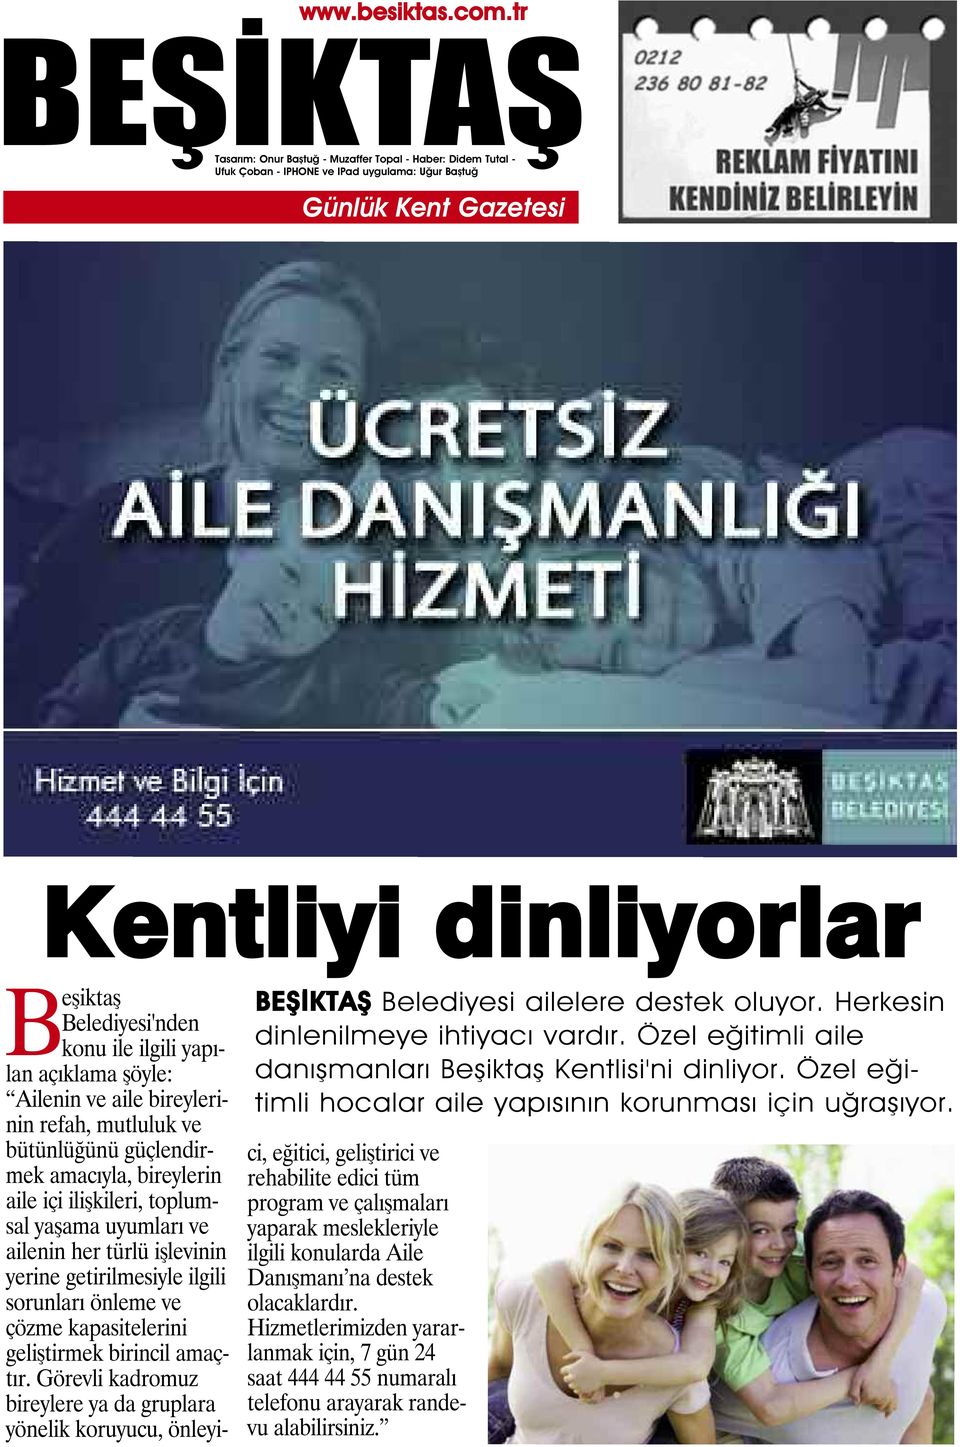 Beşiktaş Belediyesi'nden konu ile ilgili yapılan açıklama şöyle: Ailenin ve aile bireylerinin refah, mutluluk ve bütünlüğünü güçlendirmek amacıyla, bireylerin aile içi ilişkileri, toplumsal yaşama